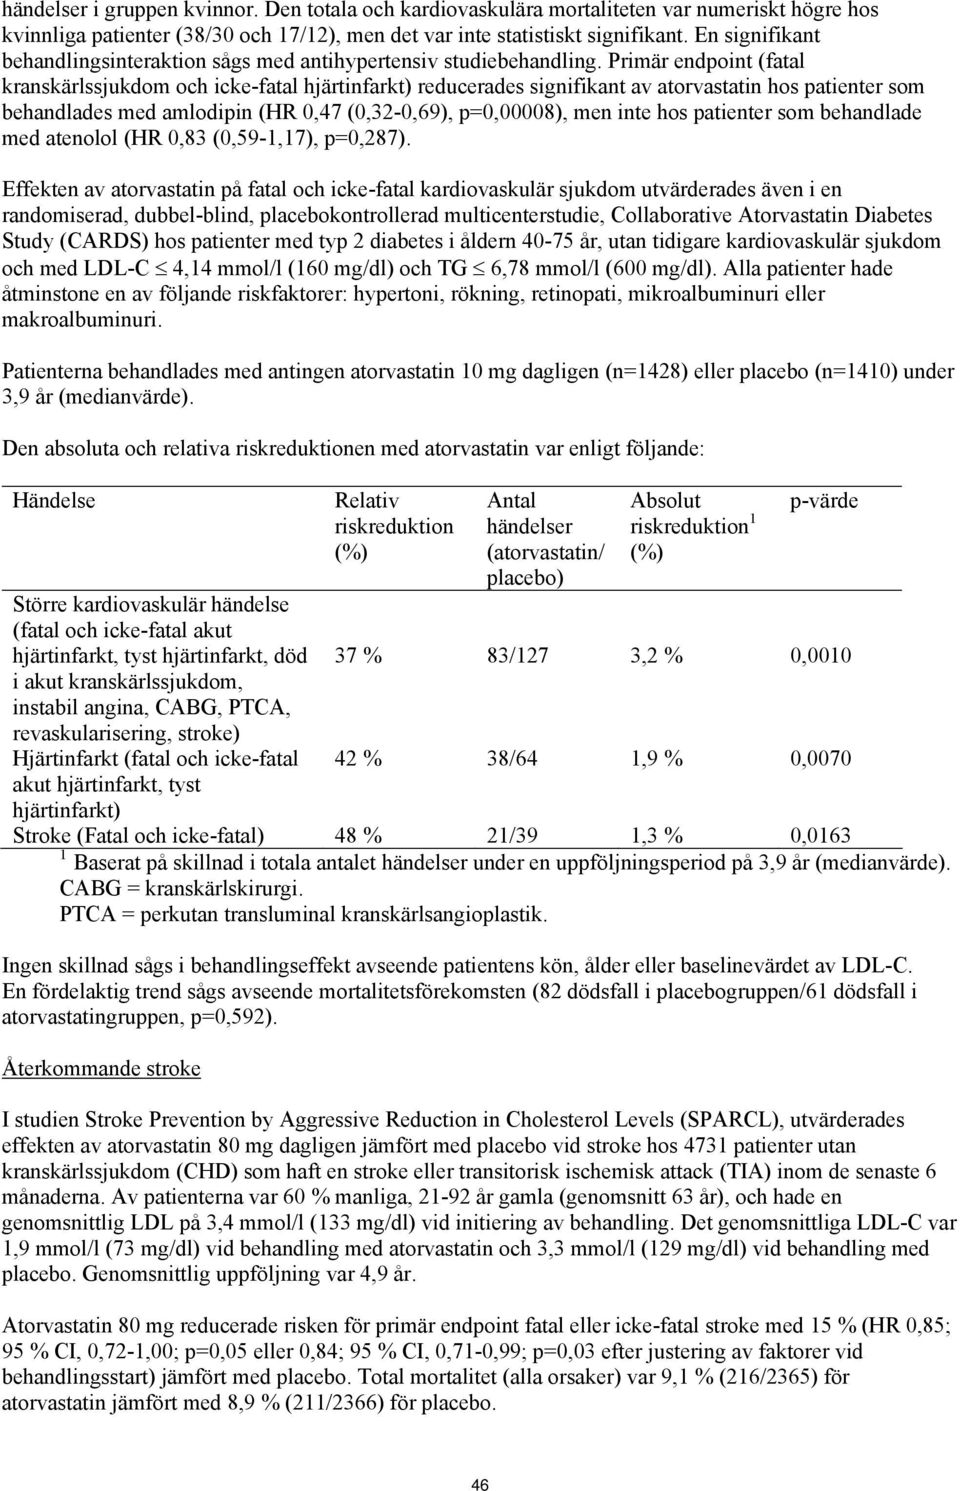 Primär endpoint (fatal kranskärlssjukdom och icke-fatal hjärtinfarkt) reducerades signifikant av atorvastatin hos patienter som behandlades med amlodipin (HR 0,47 (0,32-0,69), p=0,00008), men inte